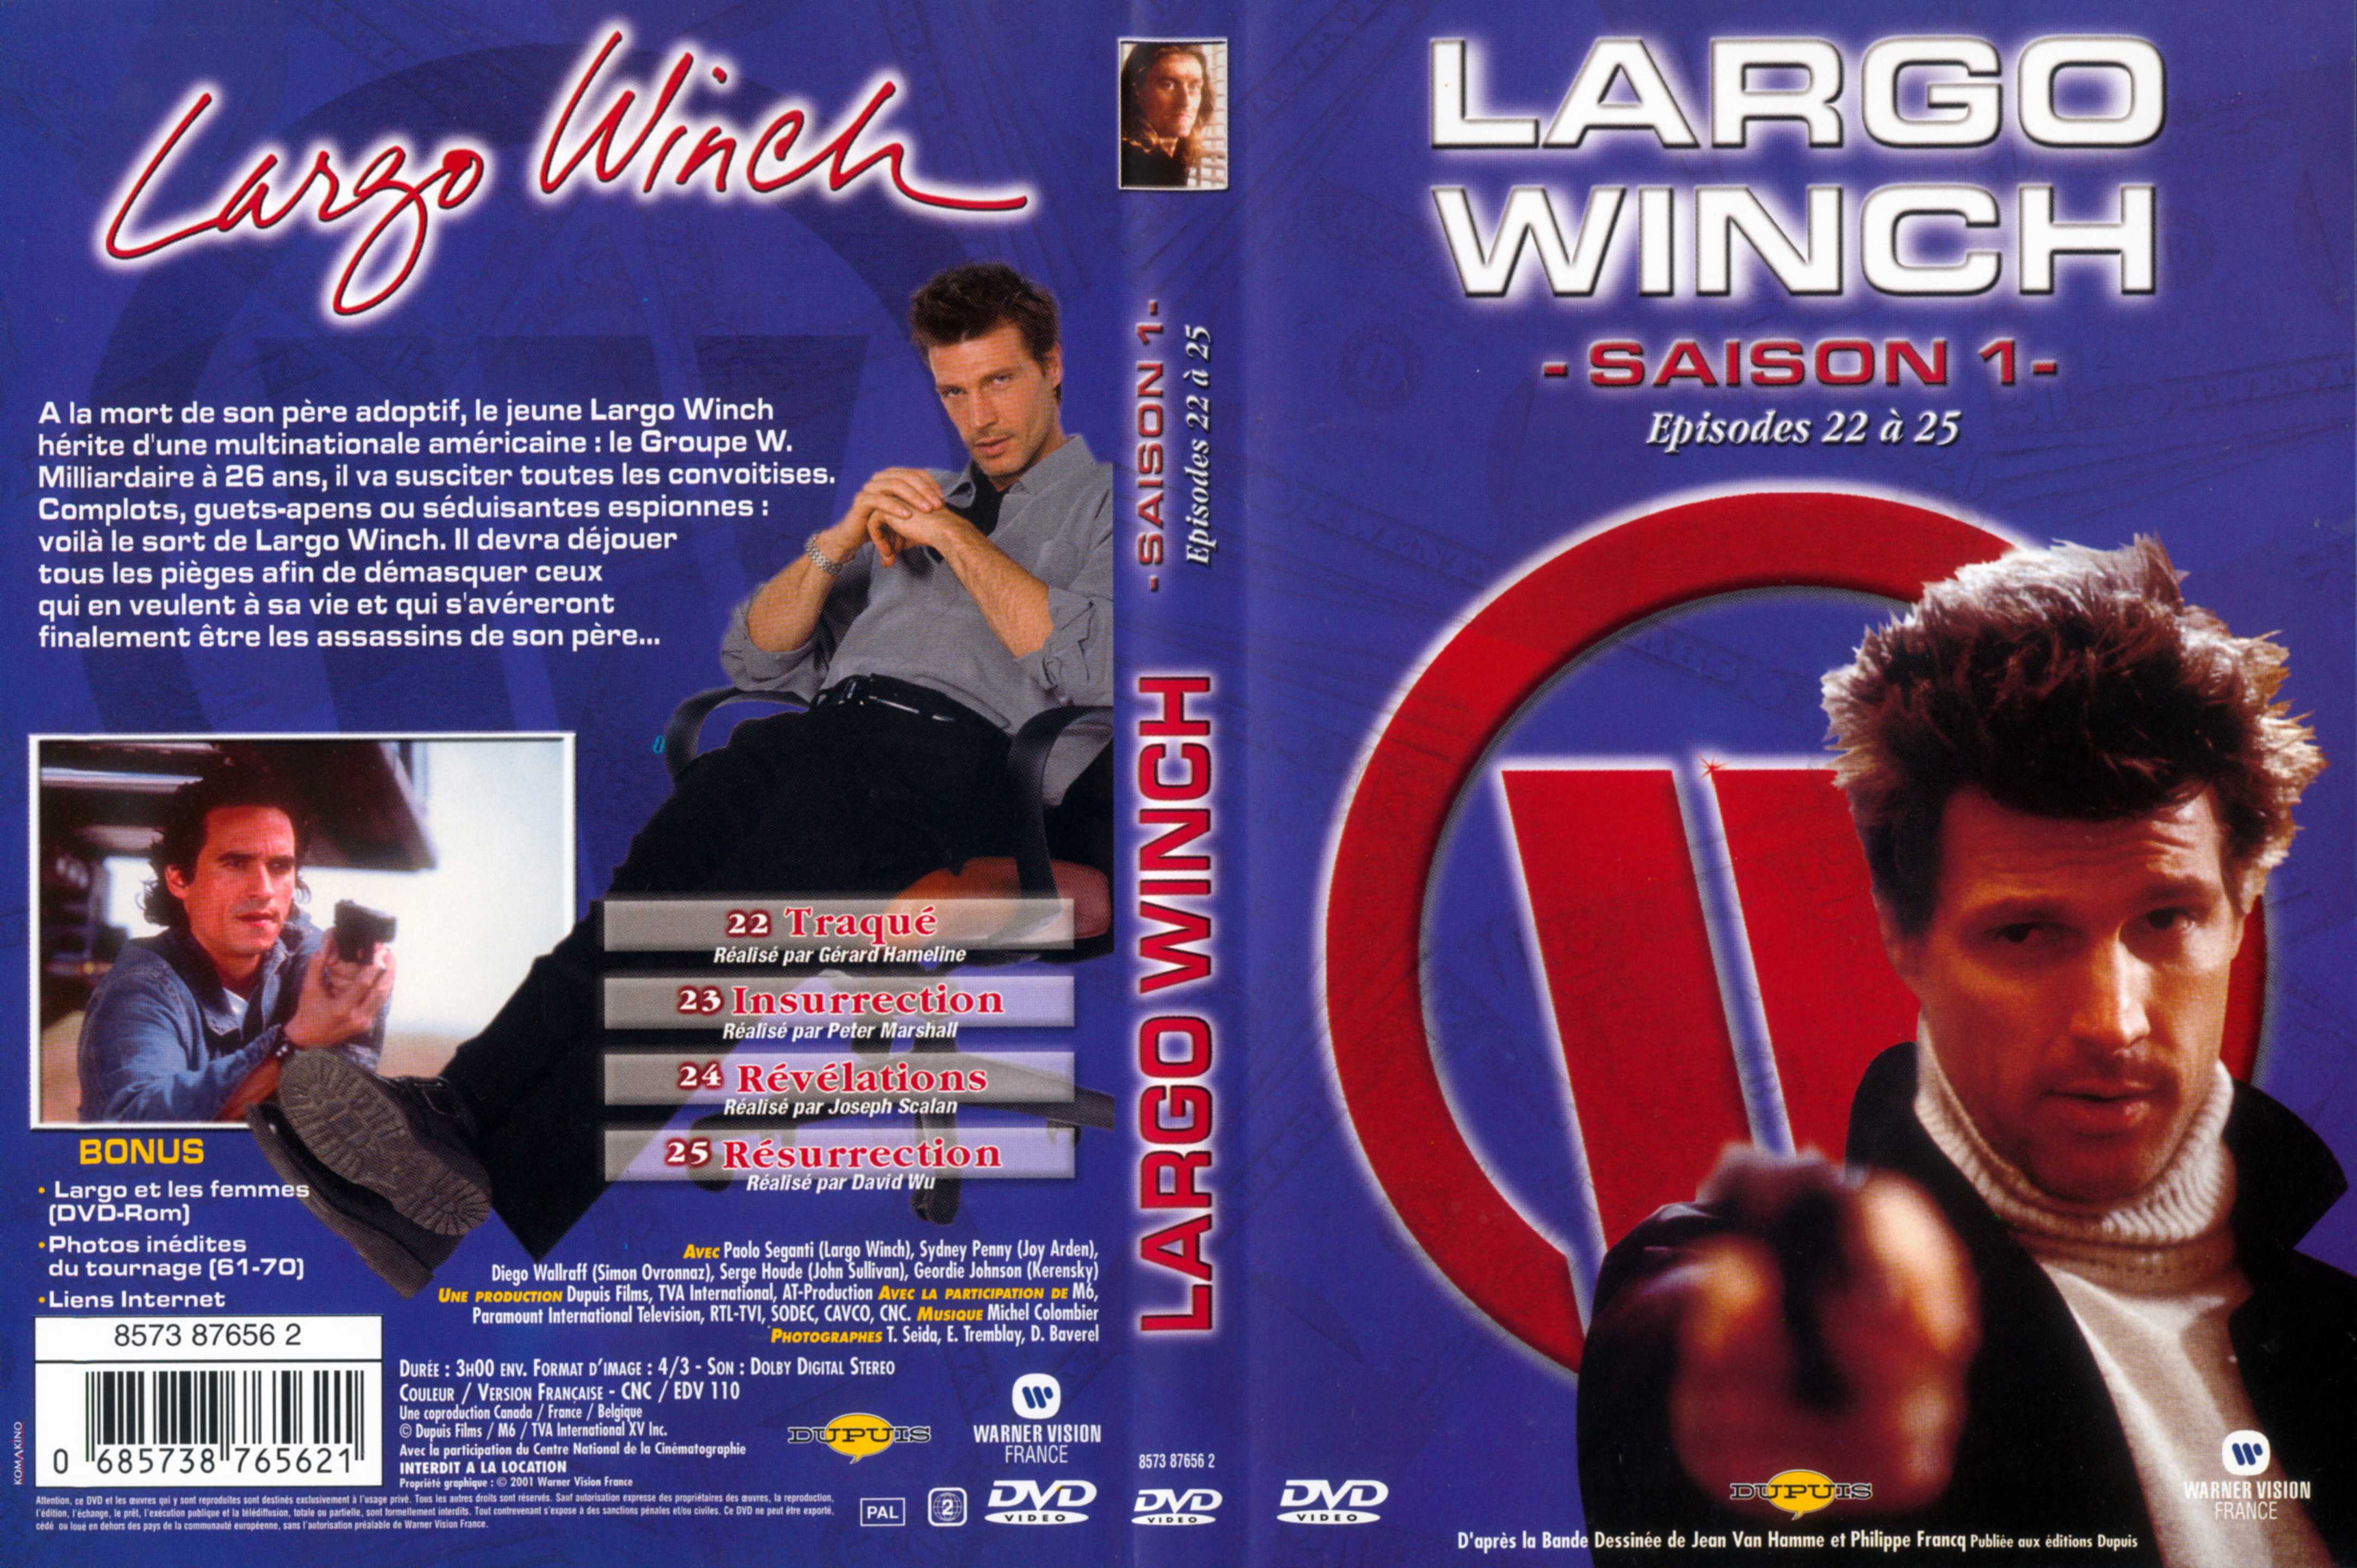 Jaquette DVD Largo Winch Saison 1 vol 08